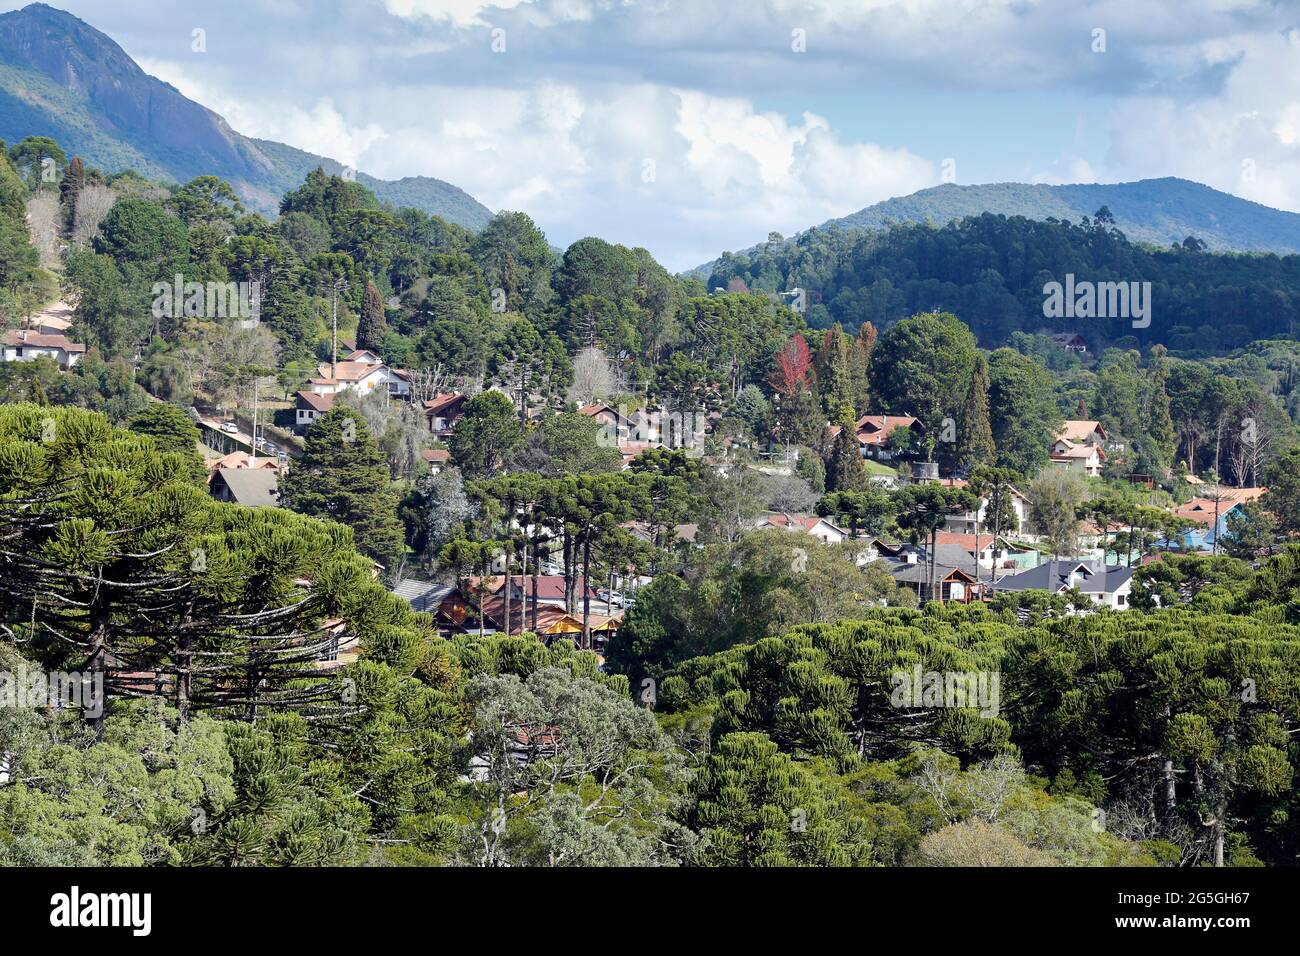 Vue sur la nature et les bâtiments au milieu des montagnes de Monte Verde, quartier de Camanducaia, intérieur de Minas Gerais. Banque D'Images